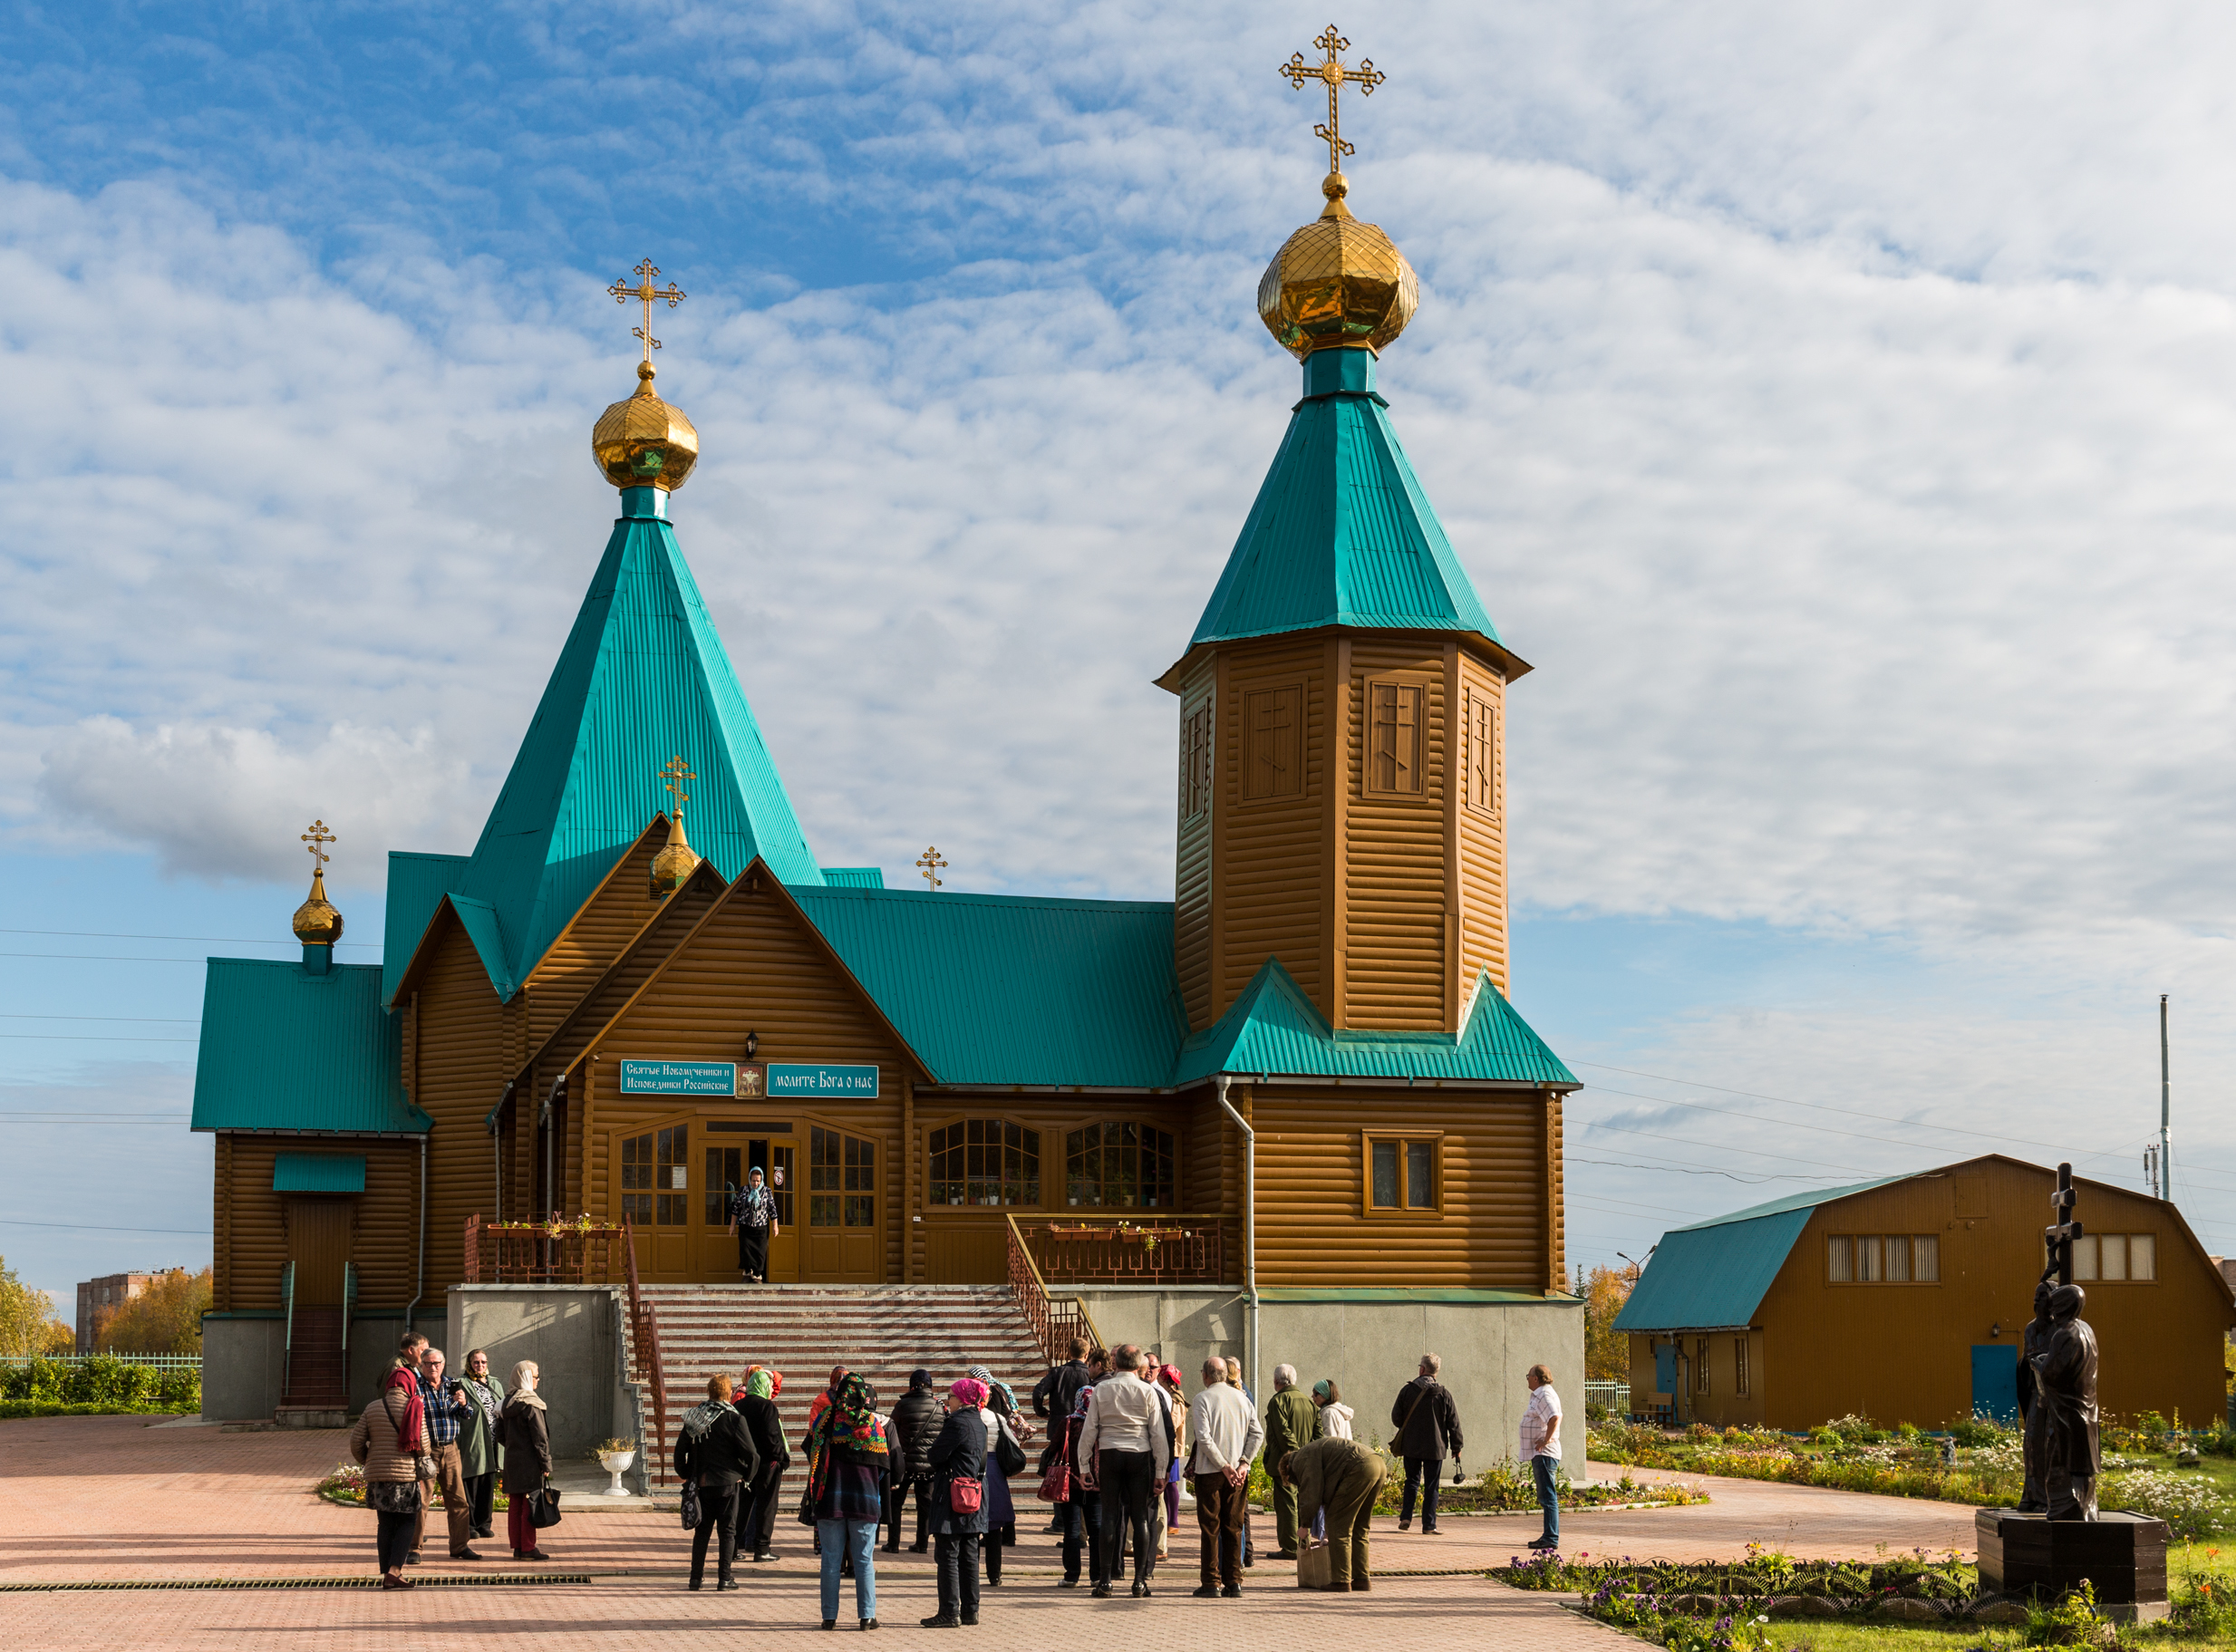 Храм Новомучеников и Исповедников Российских